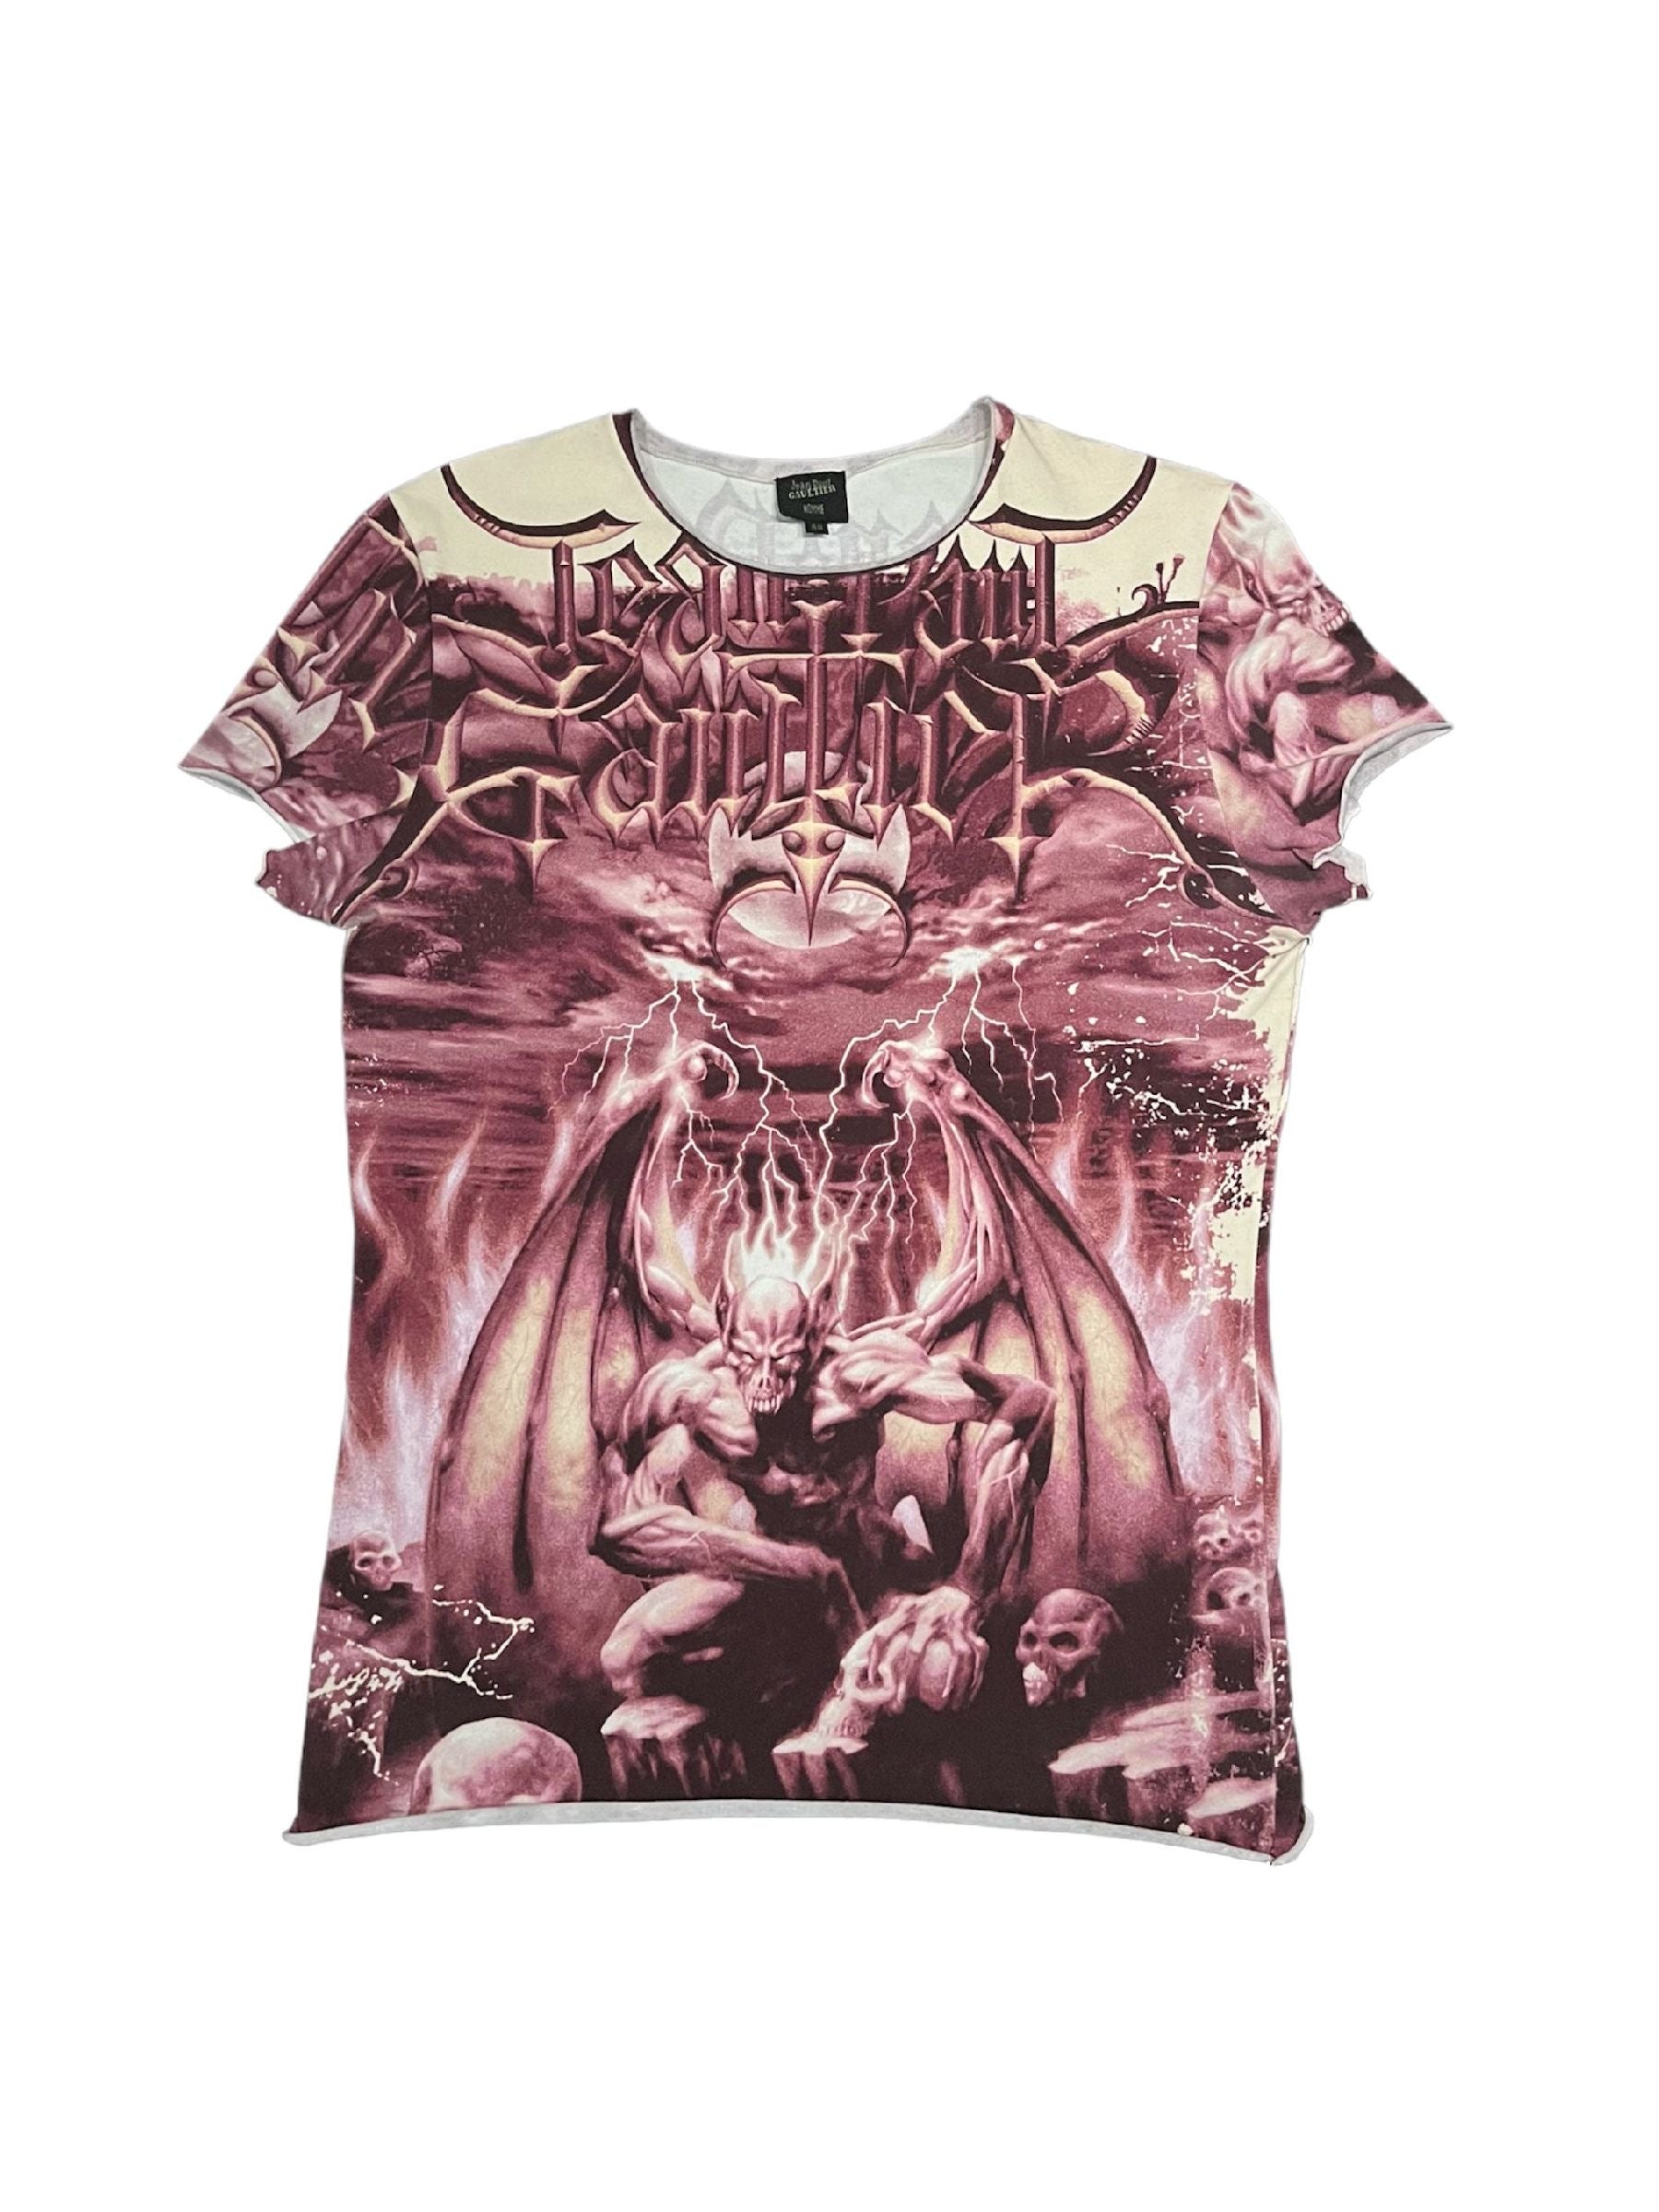 SS01 Jean Paul GAULTIER Devil T-Shirt